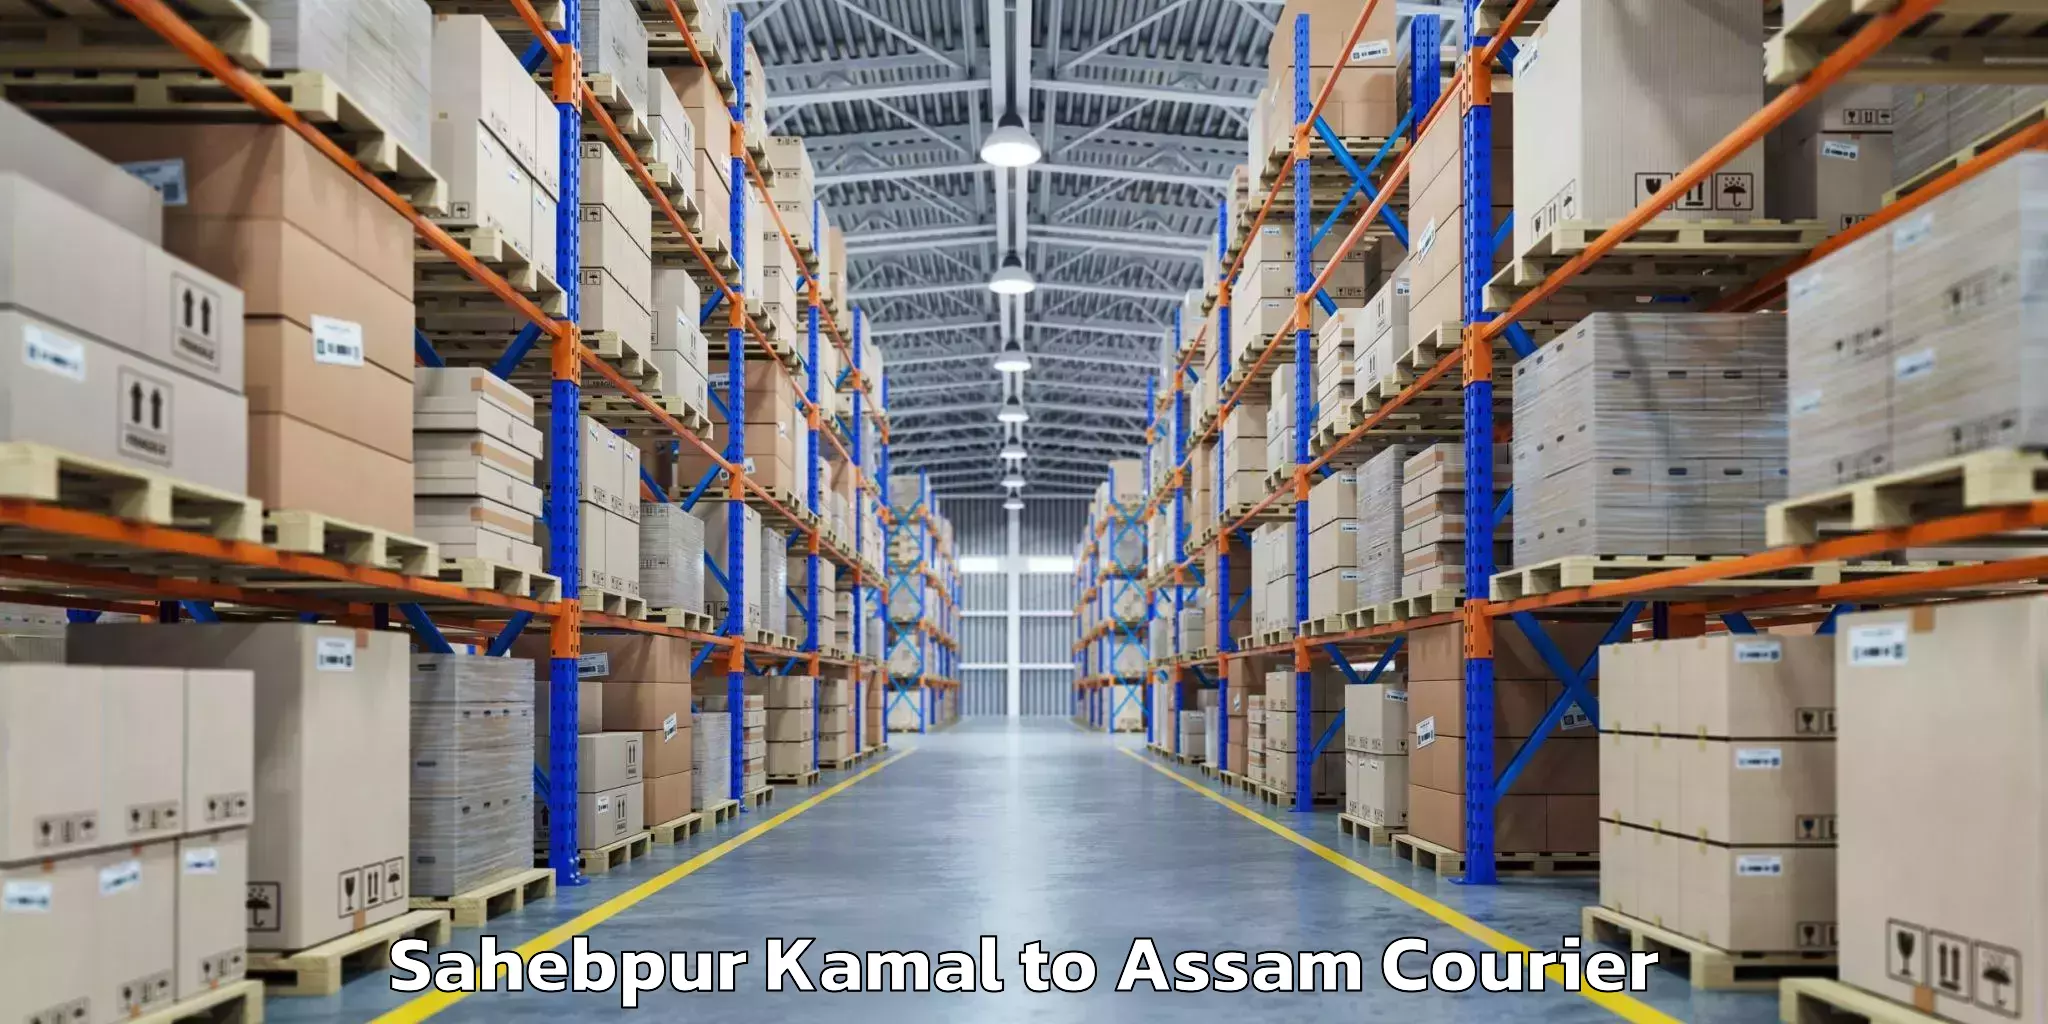 Luggage transport company Sahebpur Kamal to Udharbond